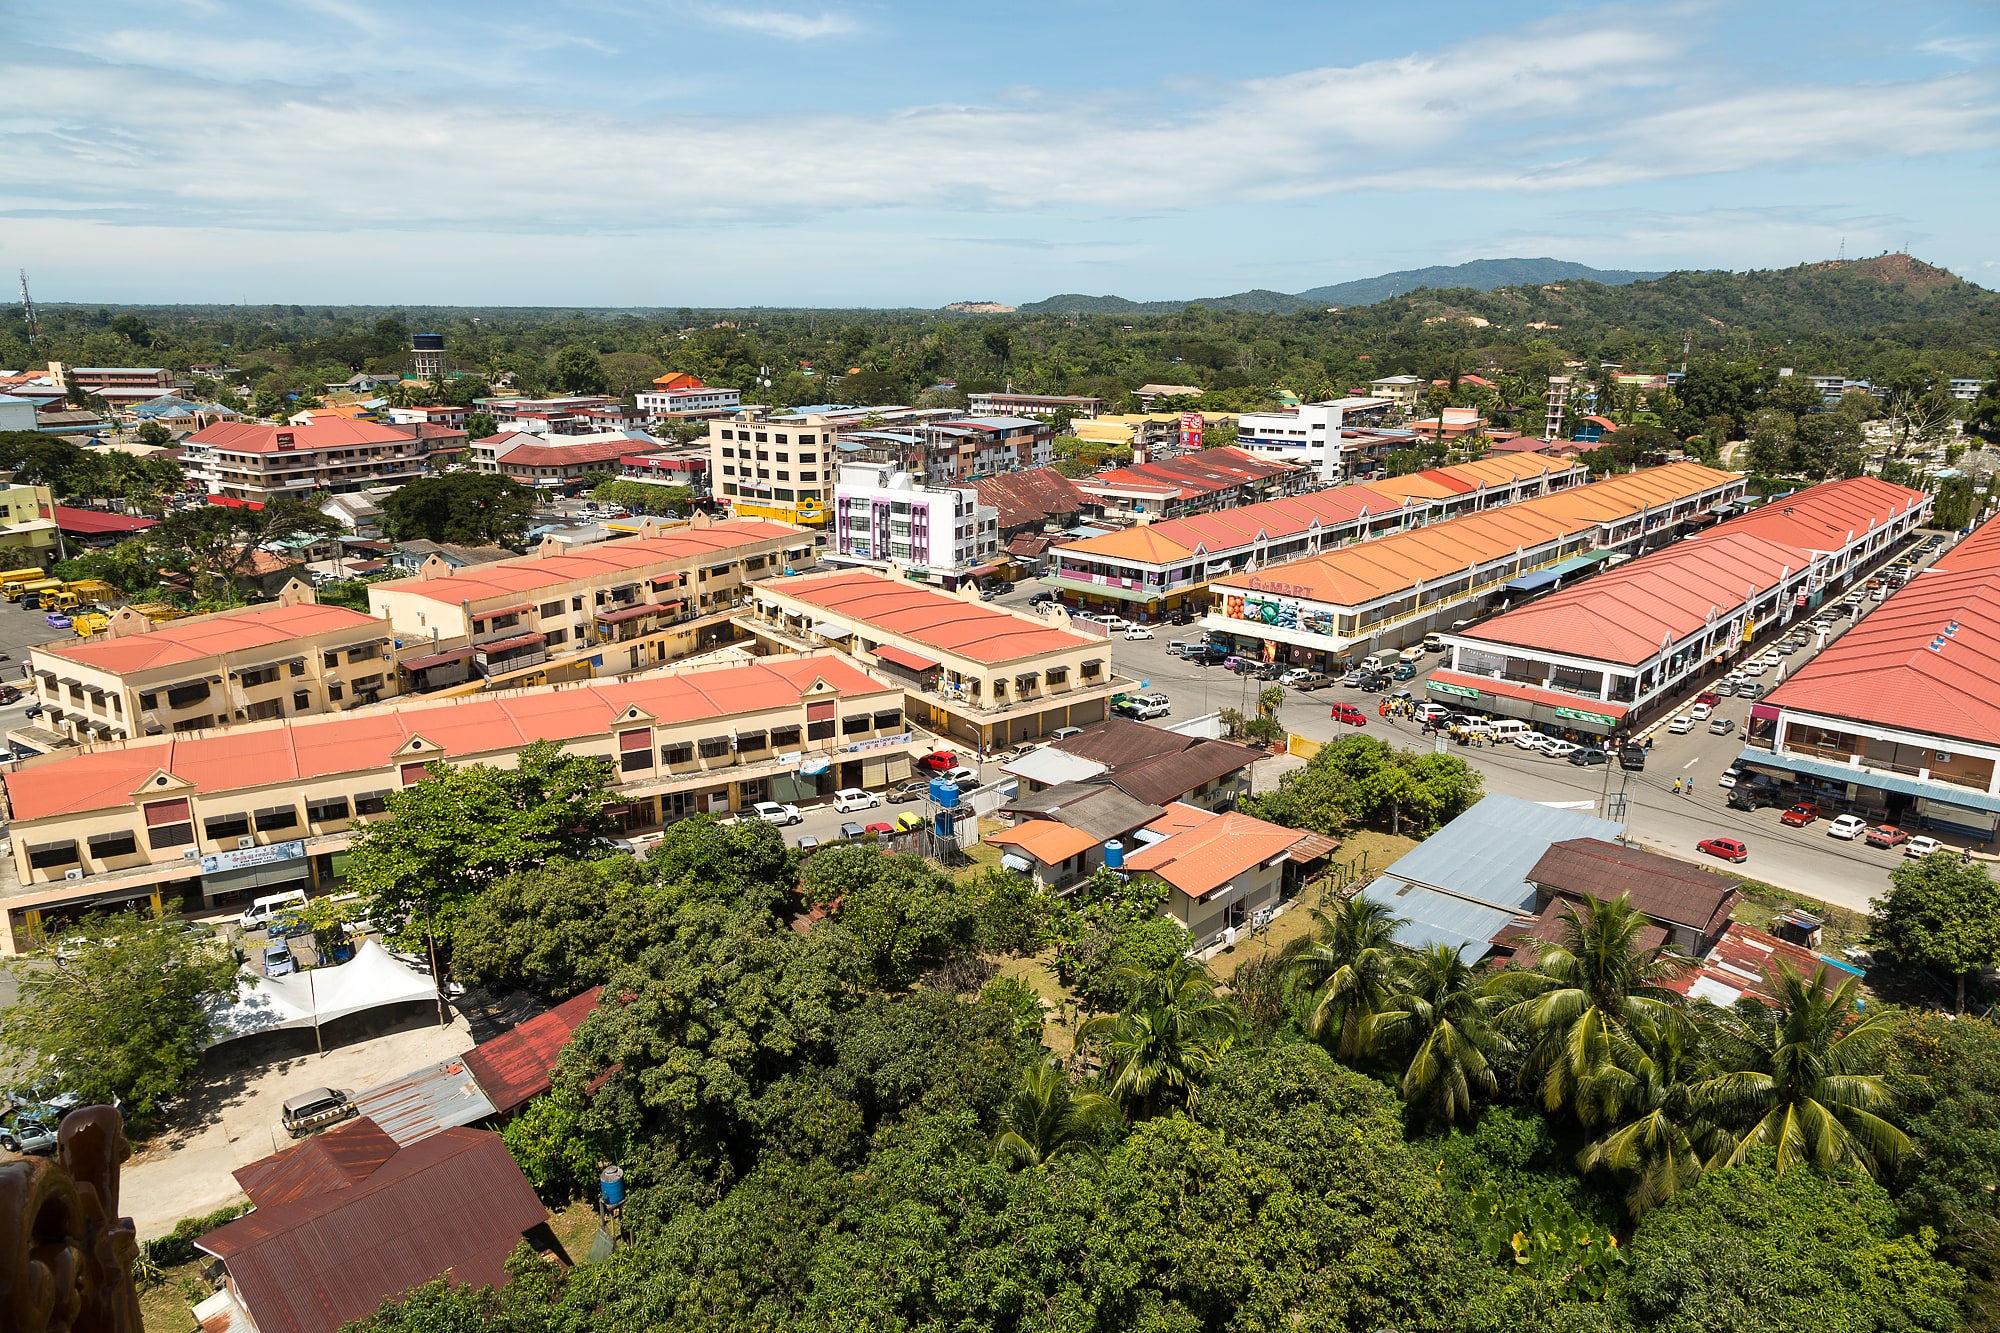 Tuaran, Malaysia